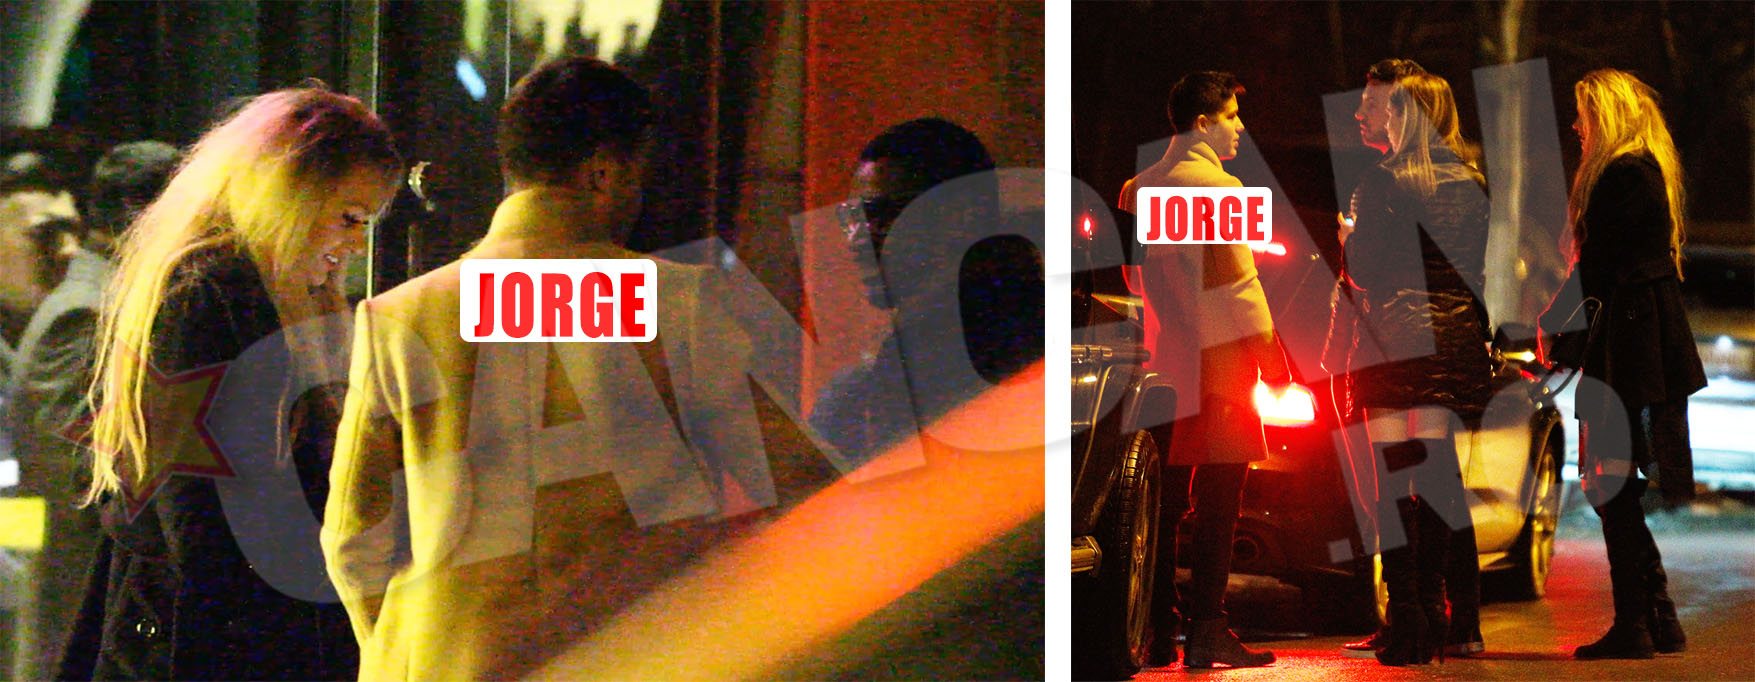 In jurul orei 2.30 dimineata, Jorge a iesit din club Nuba alaturi de doua blonde si un prieten. Una dintre fete nu il scapa din ochi pe artist